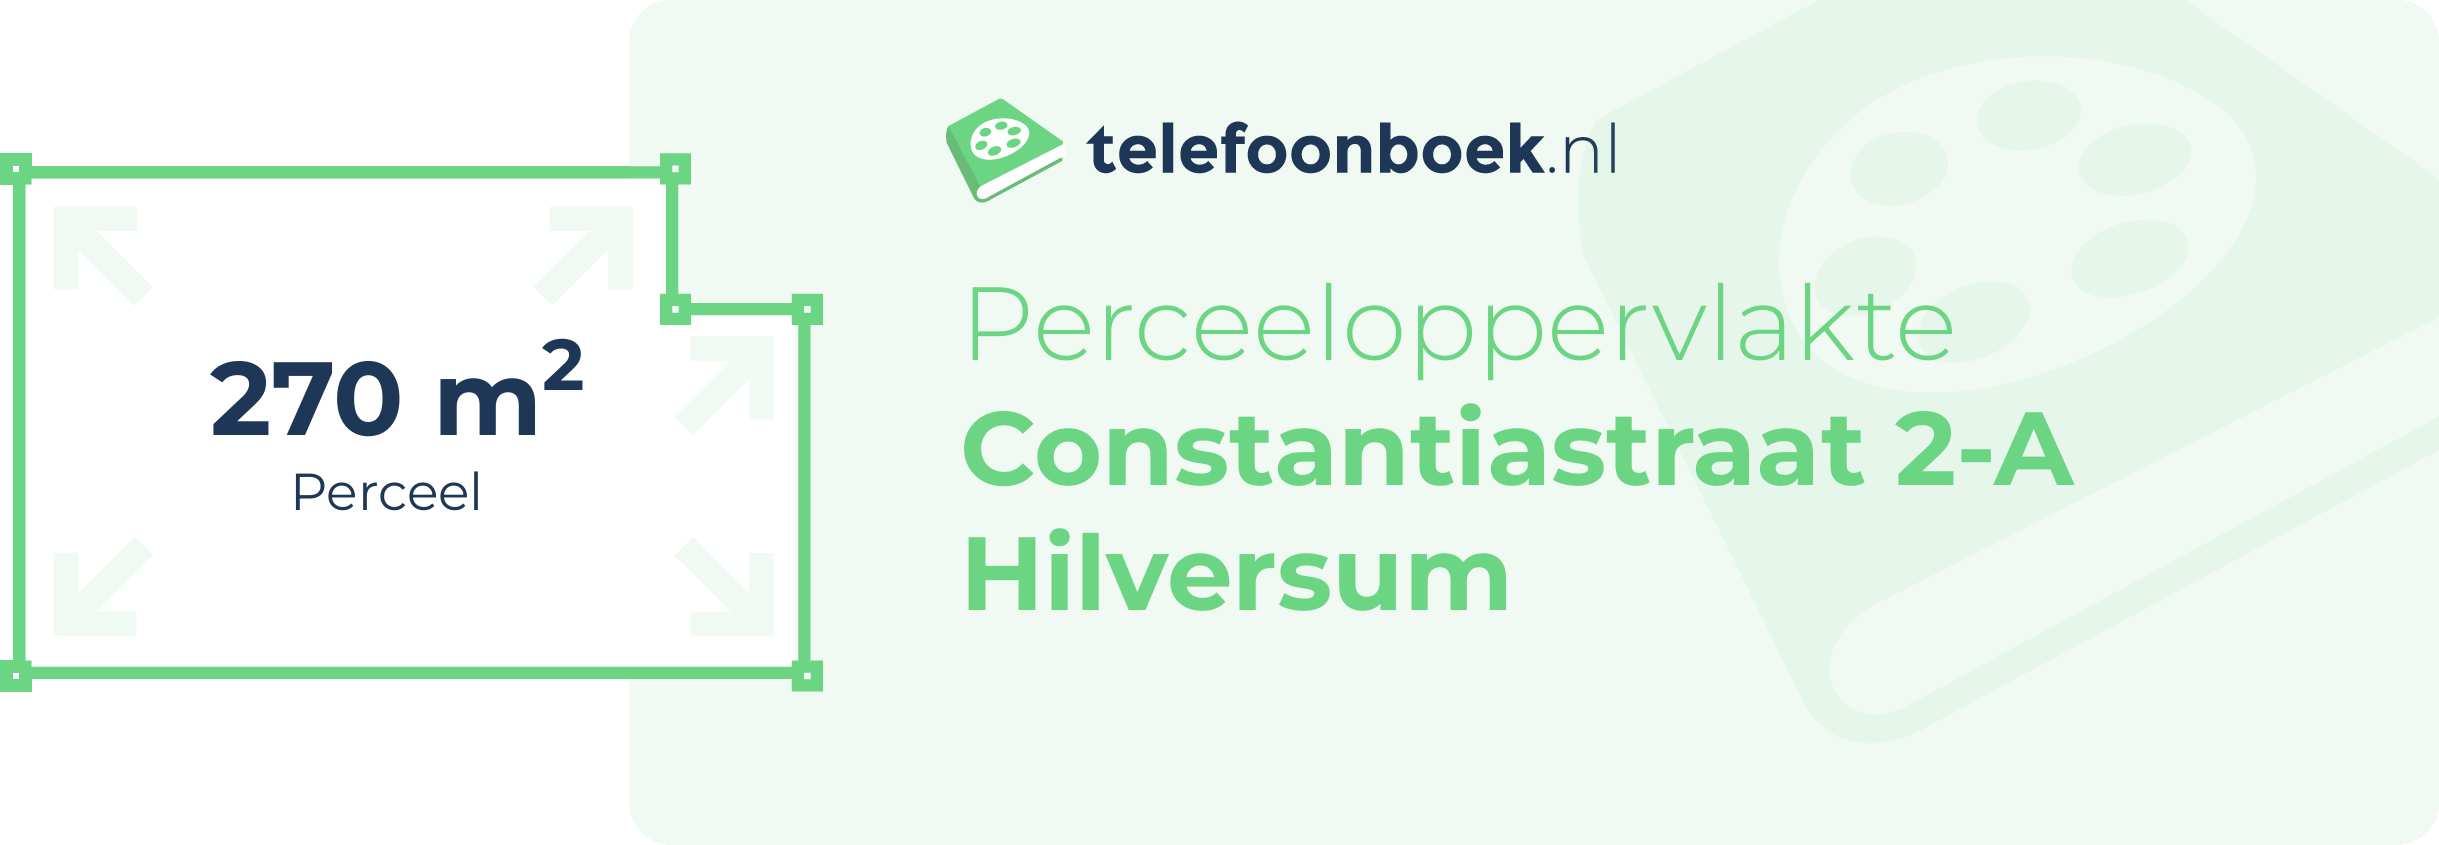 Perceeloppervlakte Constantiastraat 2-A Hilversum